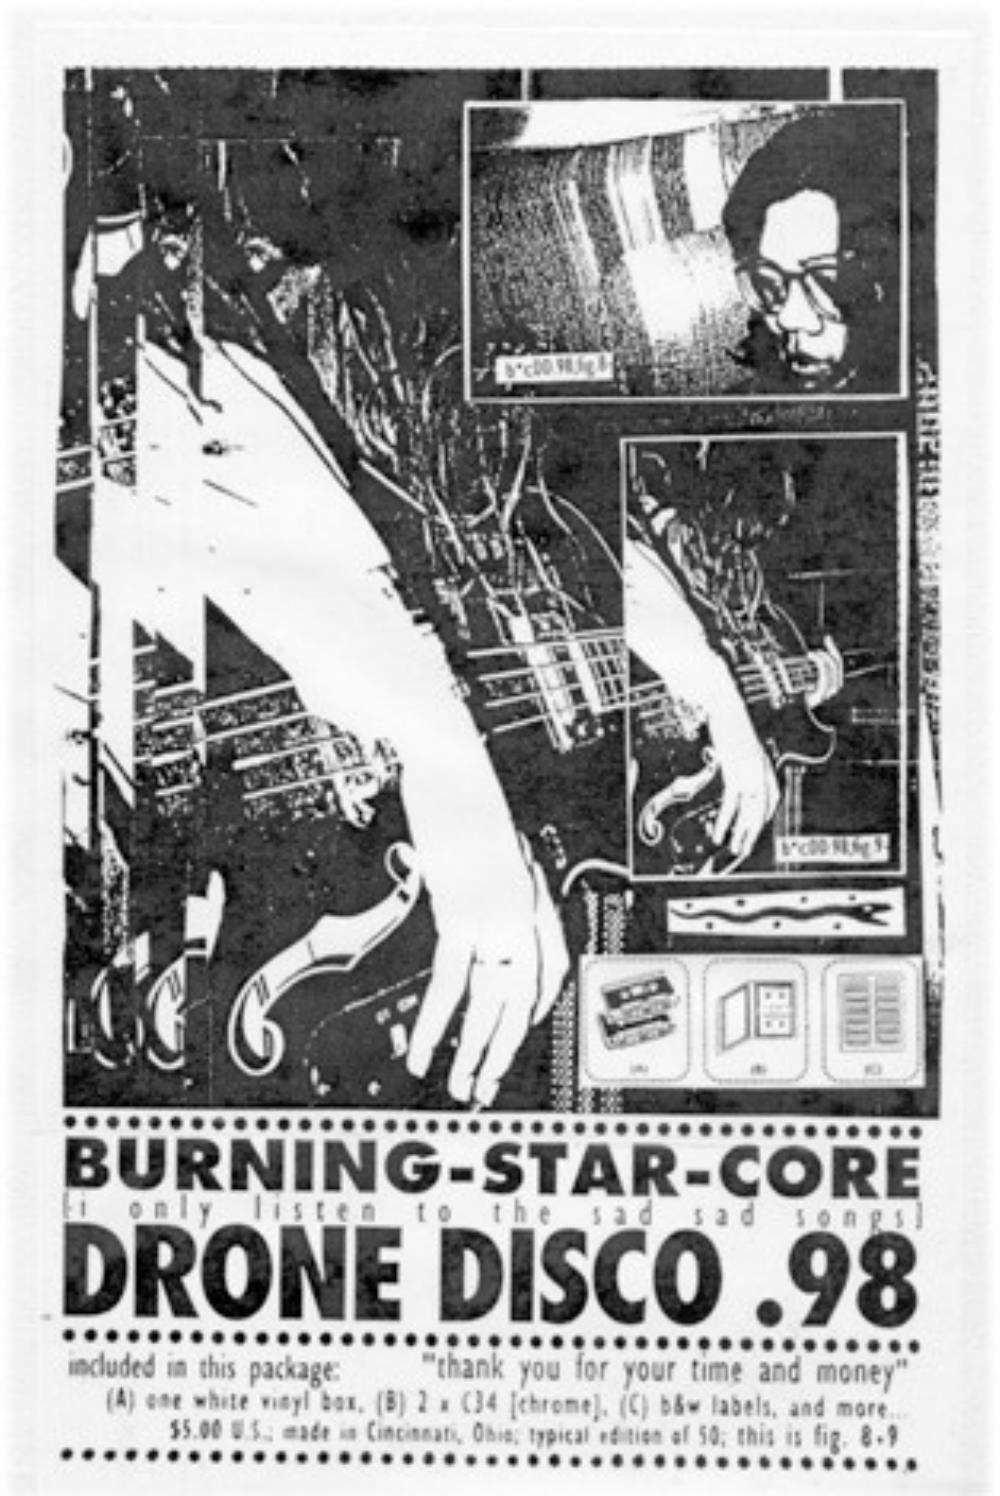 Burning Star Core Drone Disco .98 album cover